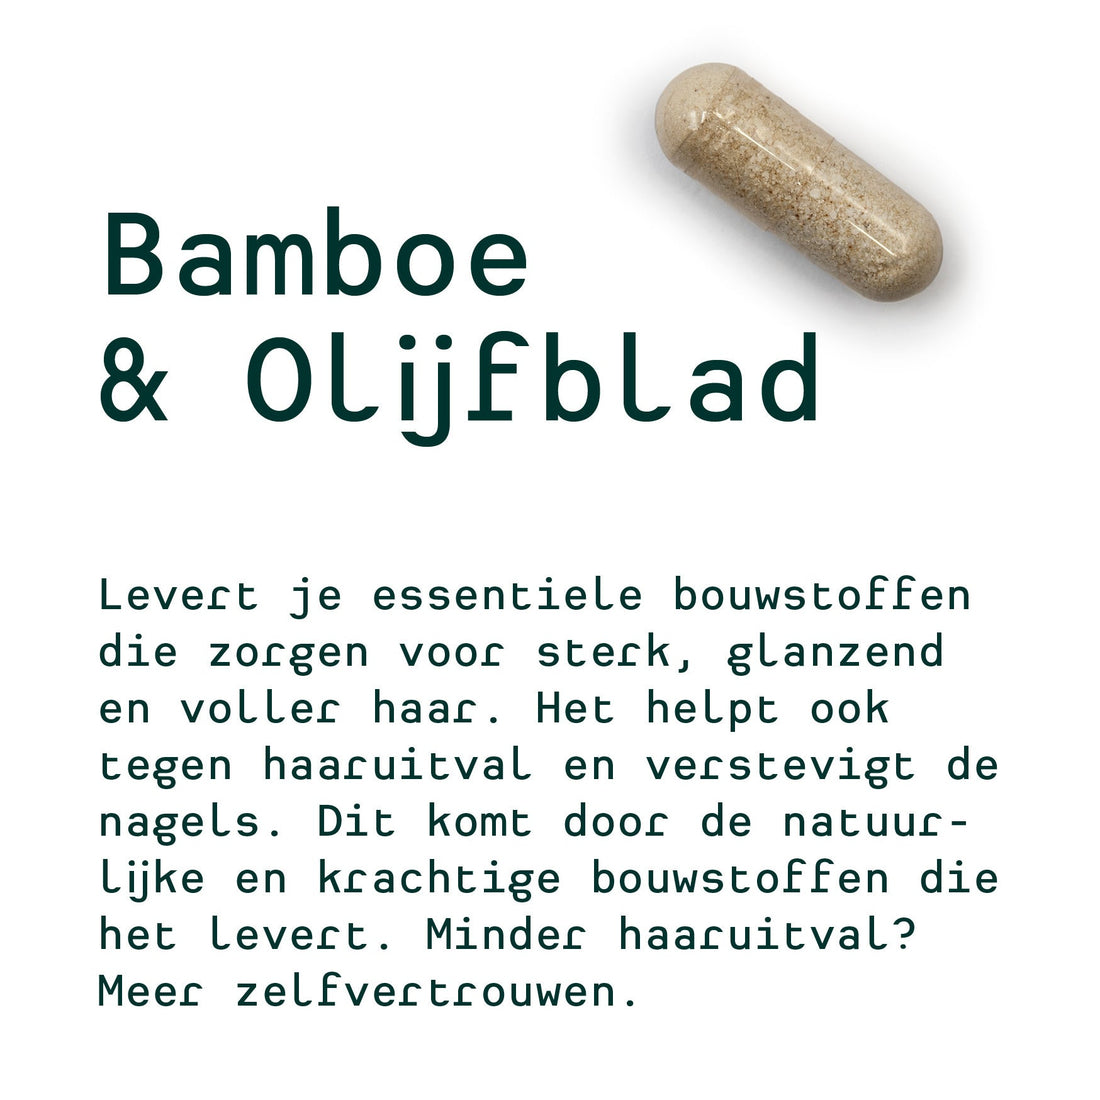 Metis Personalised Van Daria (bambou et lame d'olive, lactobacillus, digest)